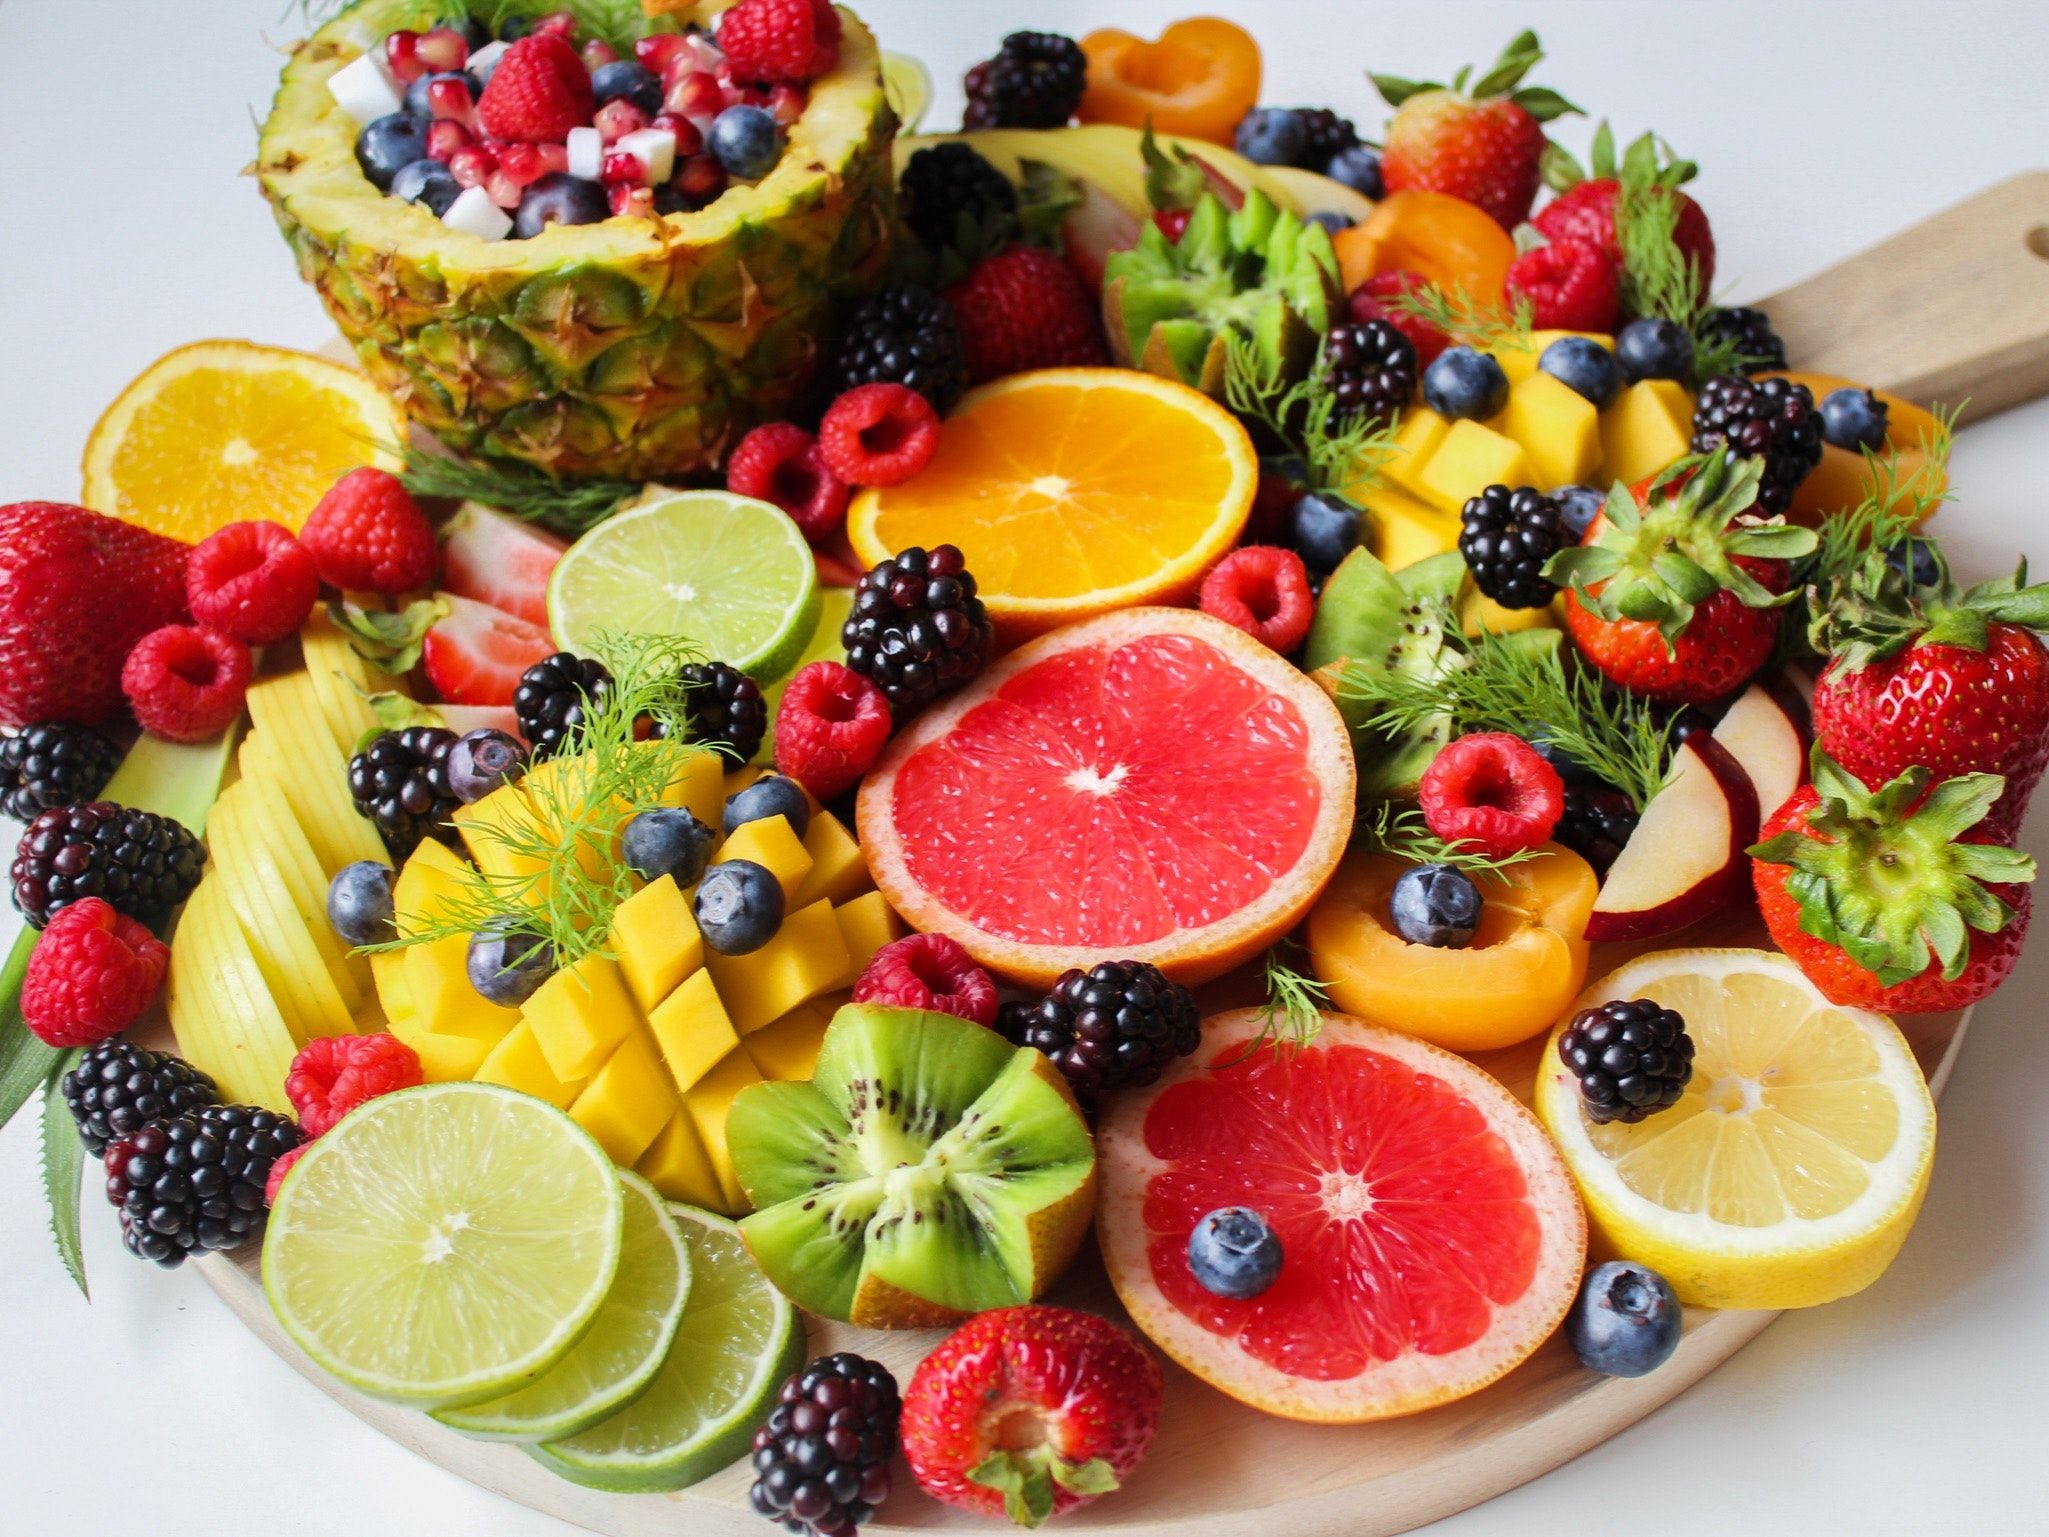 Cele mai bune fructe pentru imunitate